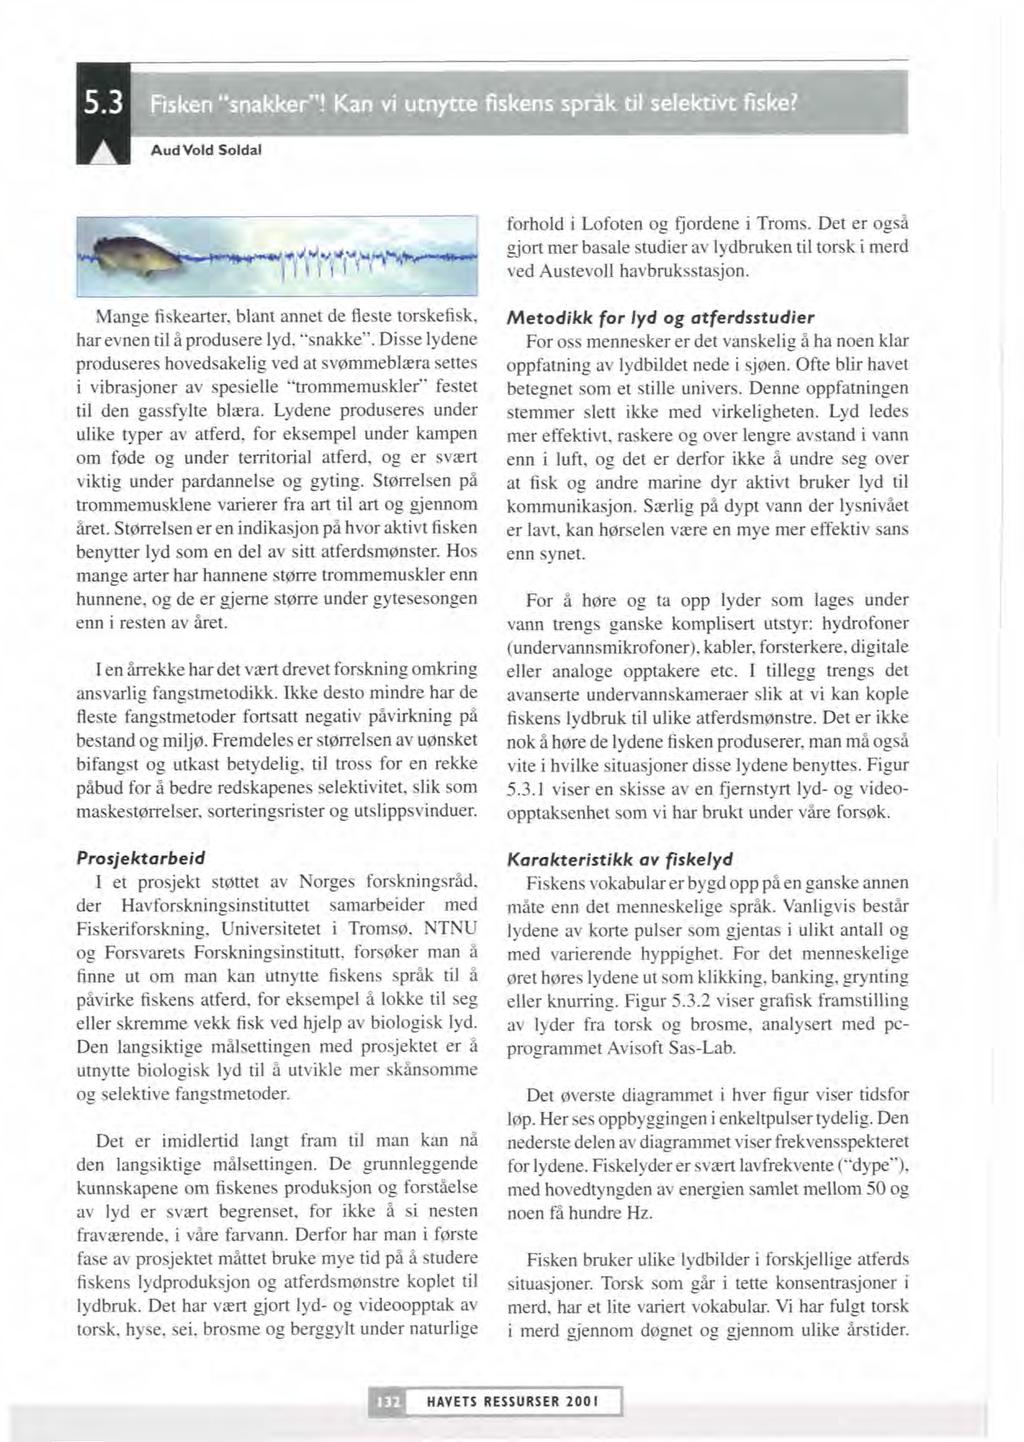 forhold i Lofoten og fjordene i Troms. Det er også gjort mer basale studier av lydbruken til torsk i merd ved Austevoll havbruksstasjon.